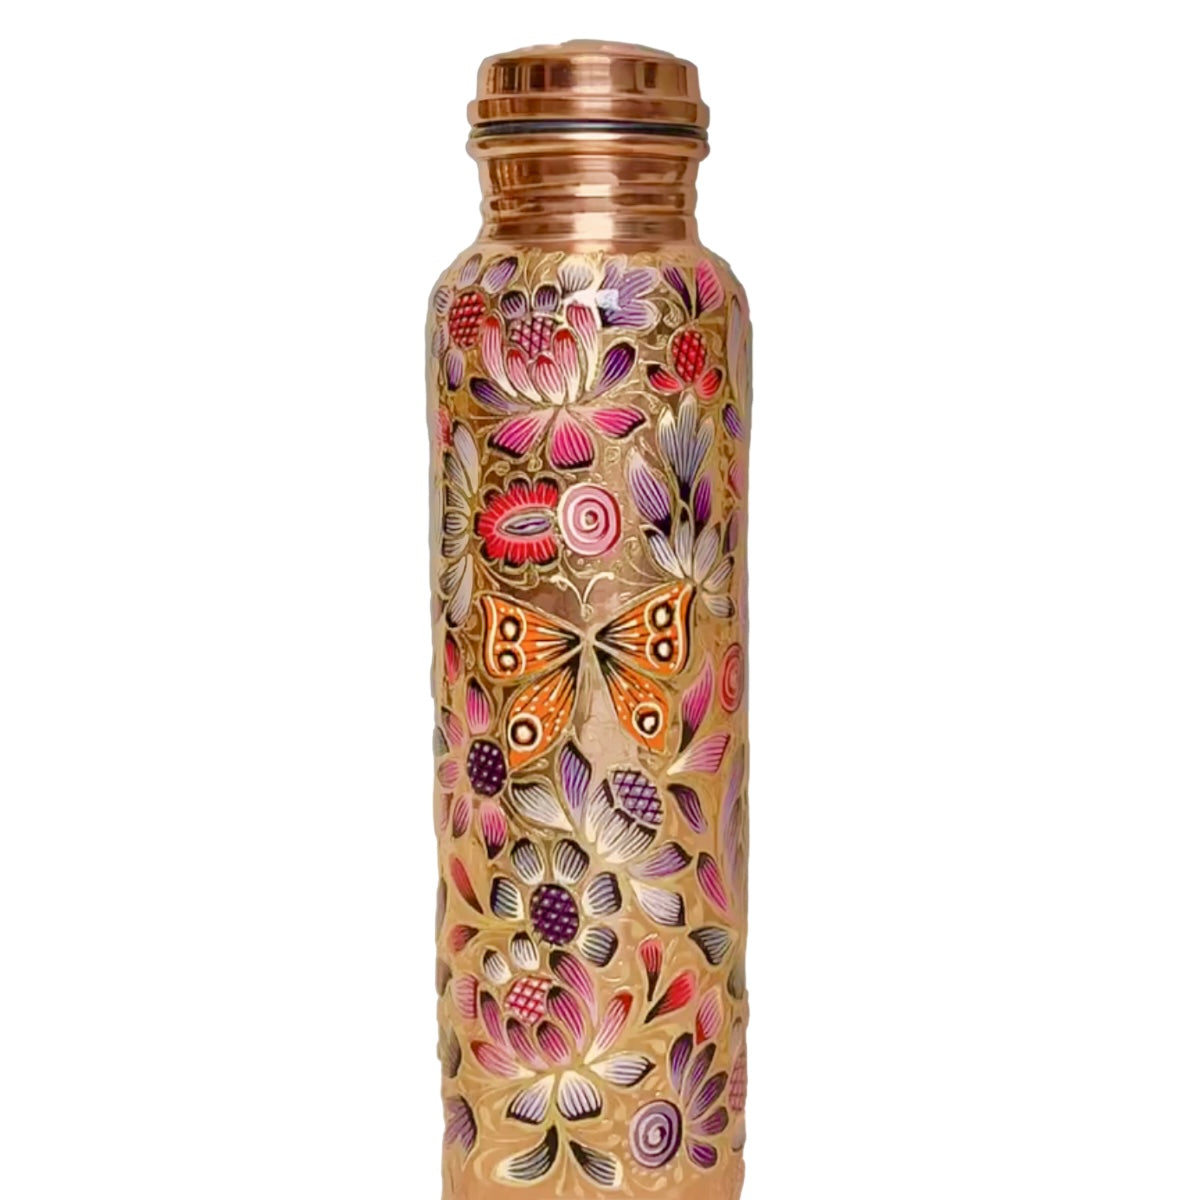 Mexican Copper 1 L / 33 oz. Water Bottle- Hand Painted Violet Butterflies CoLores Decor